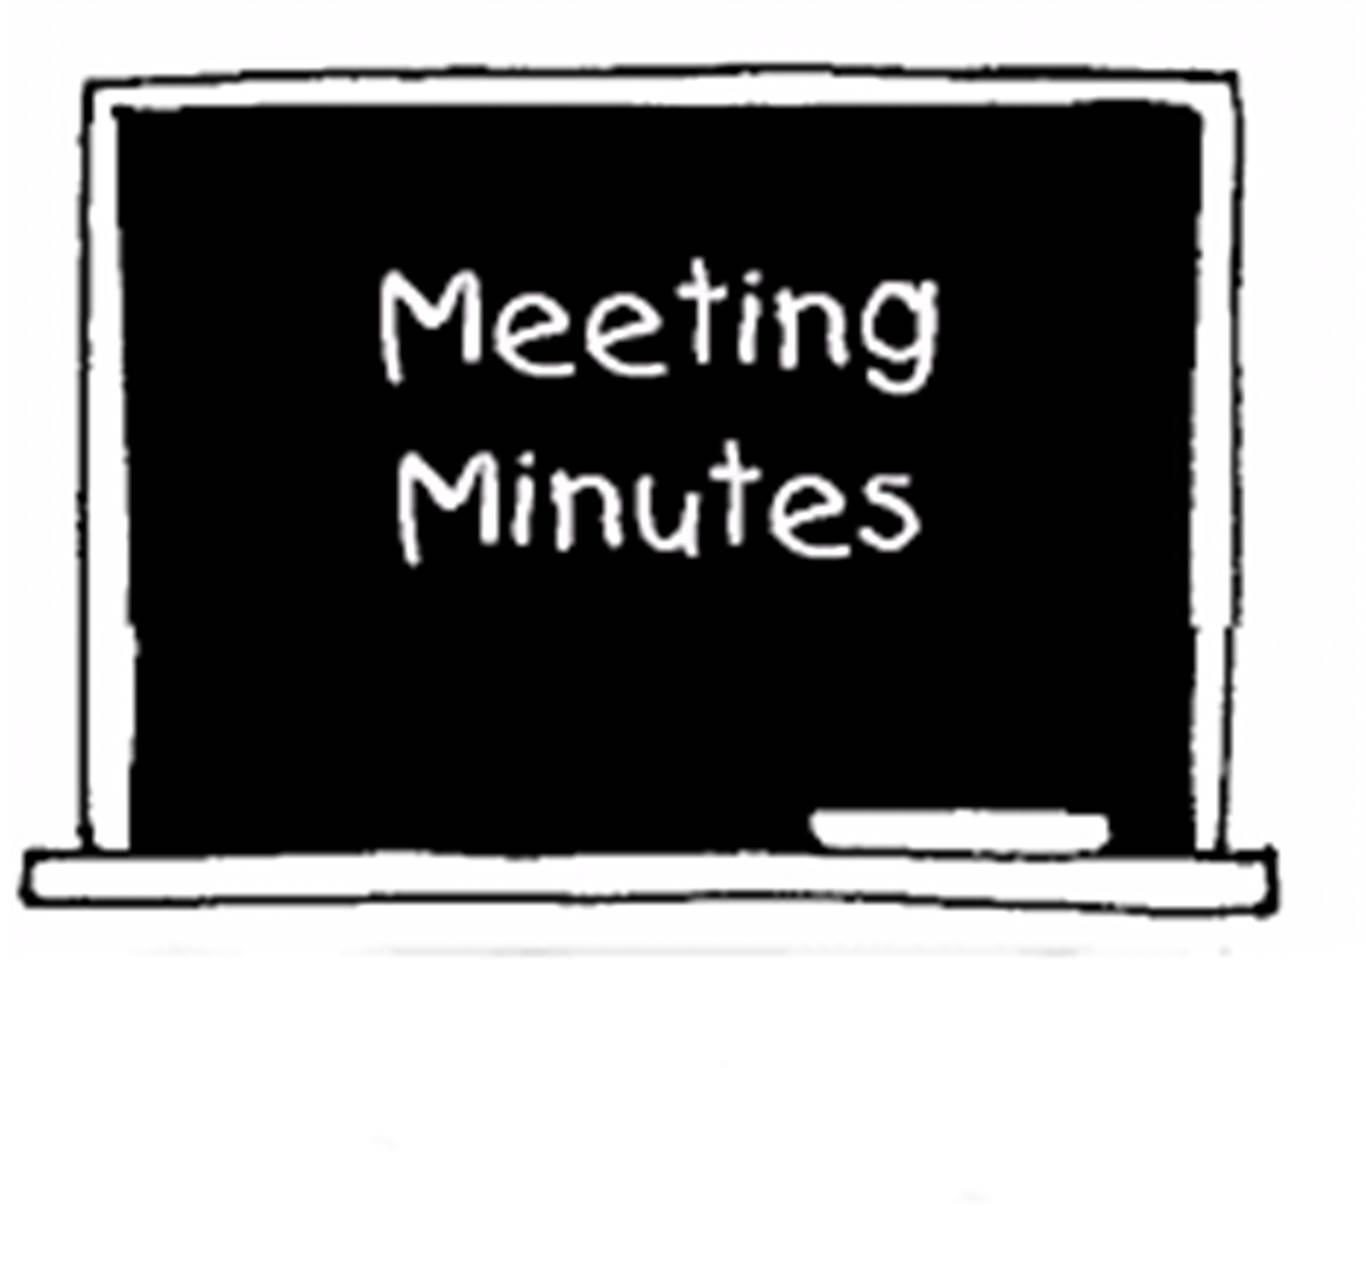 Meeting Minutes.jpg